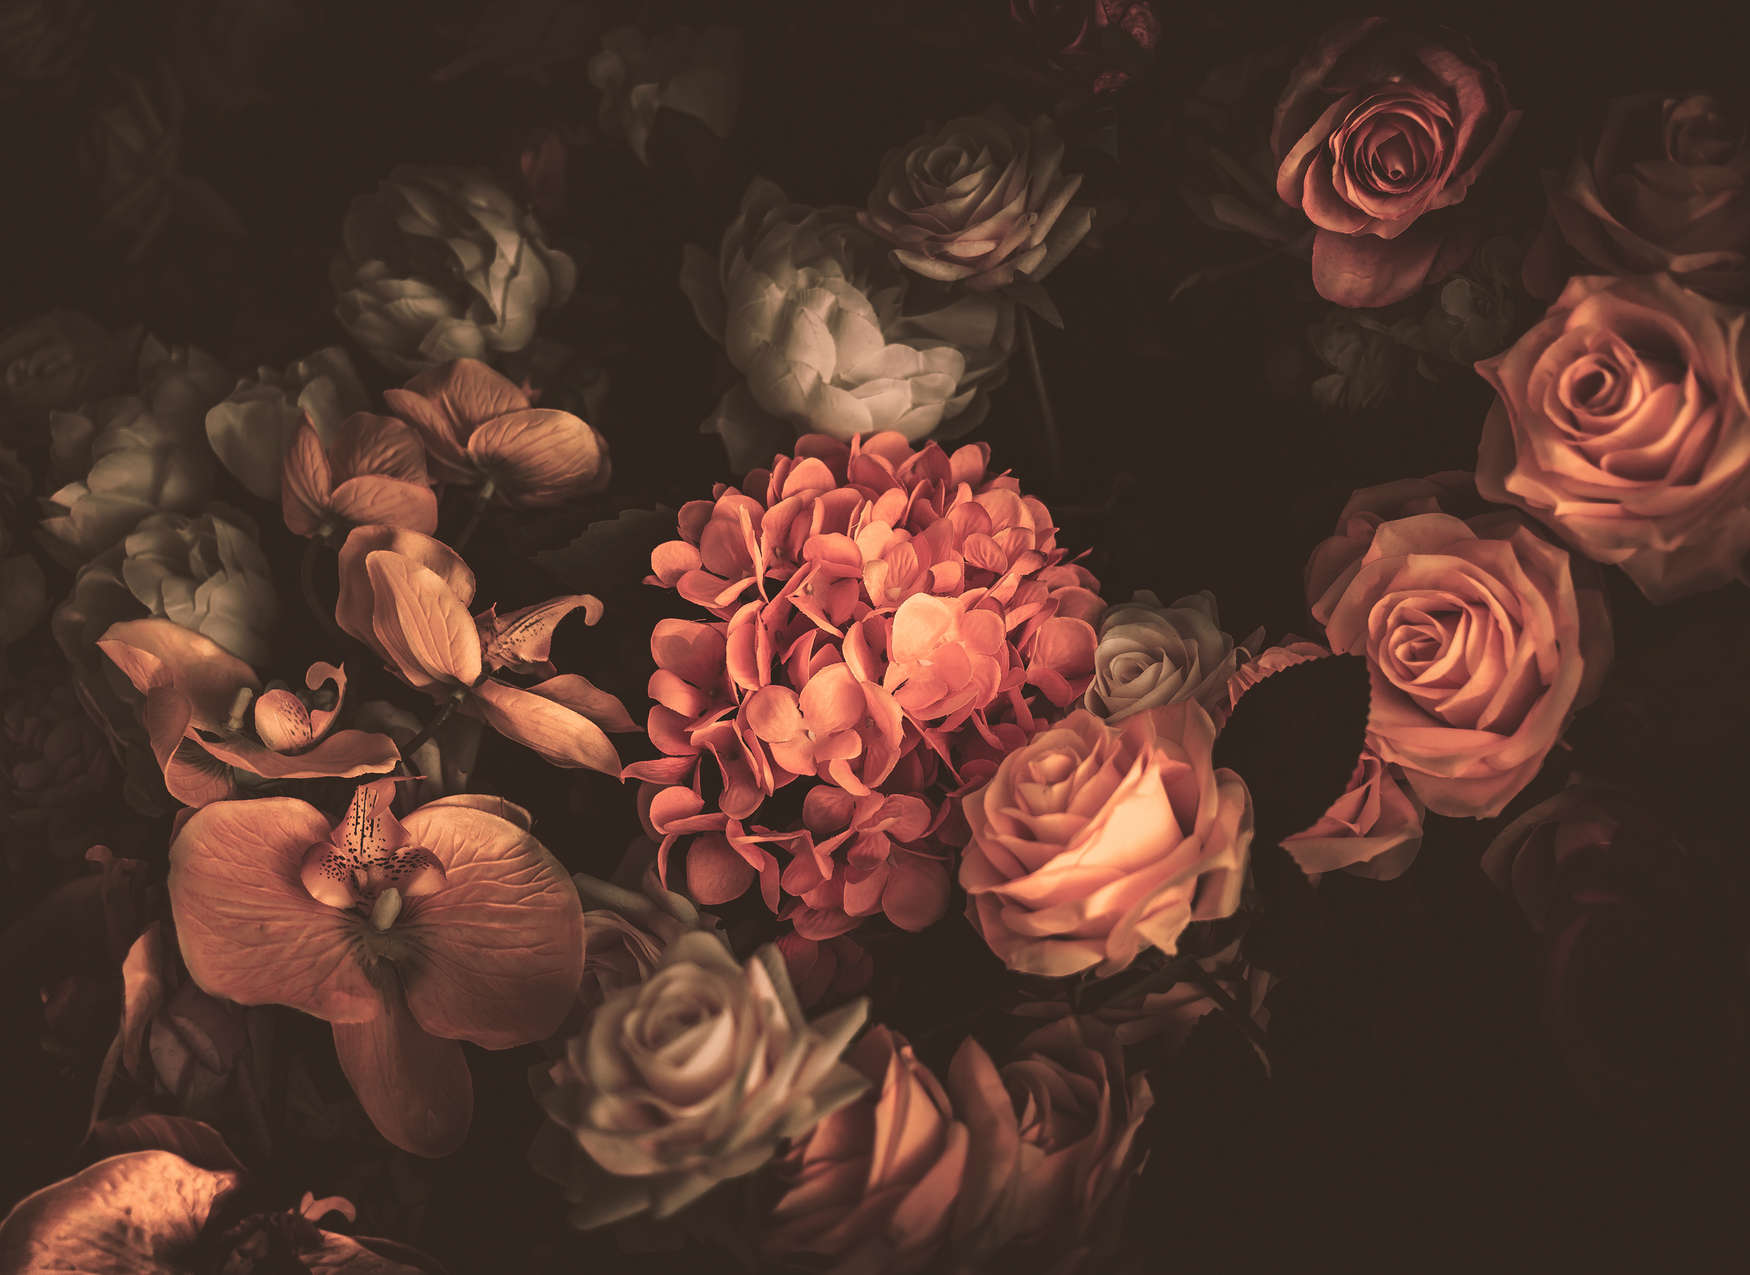             Romantisch Behang met Boeket Bloemen - Oranje, Roze, Zwart
        